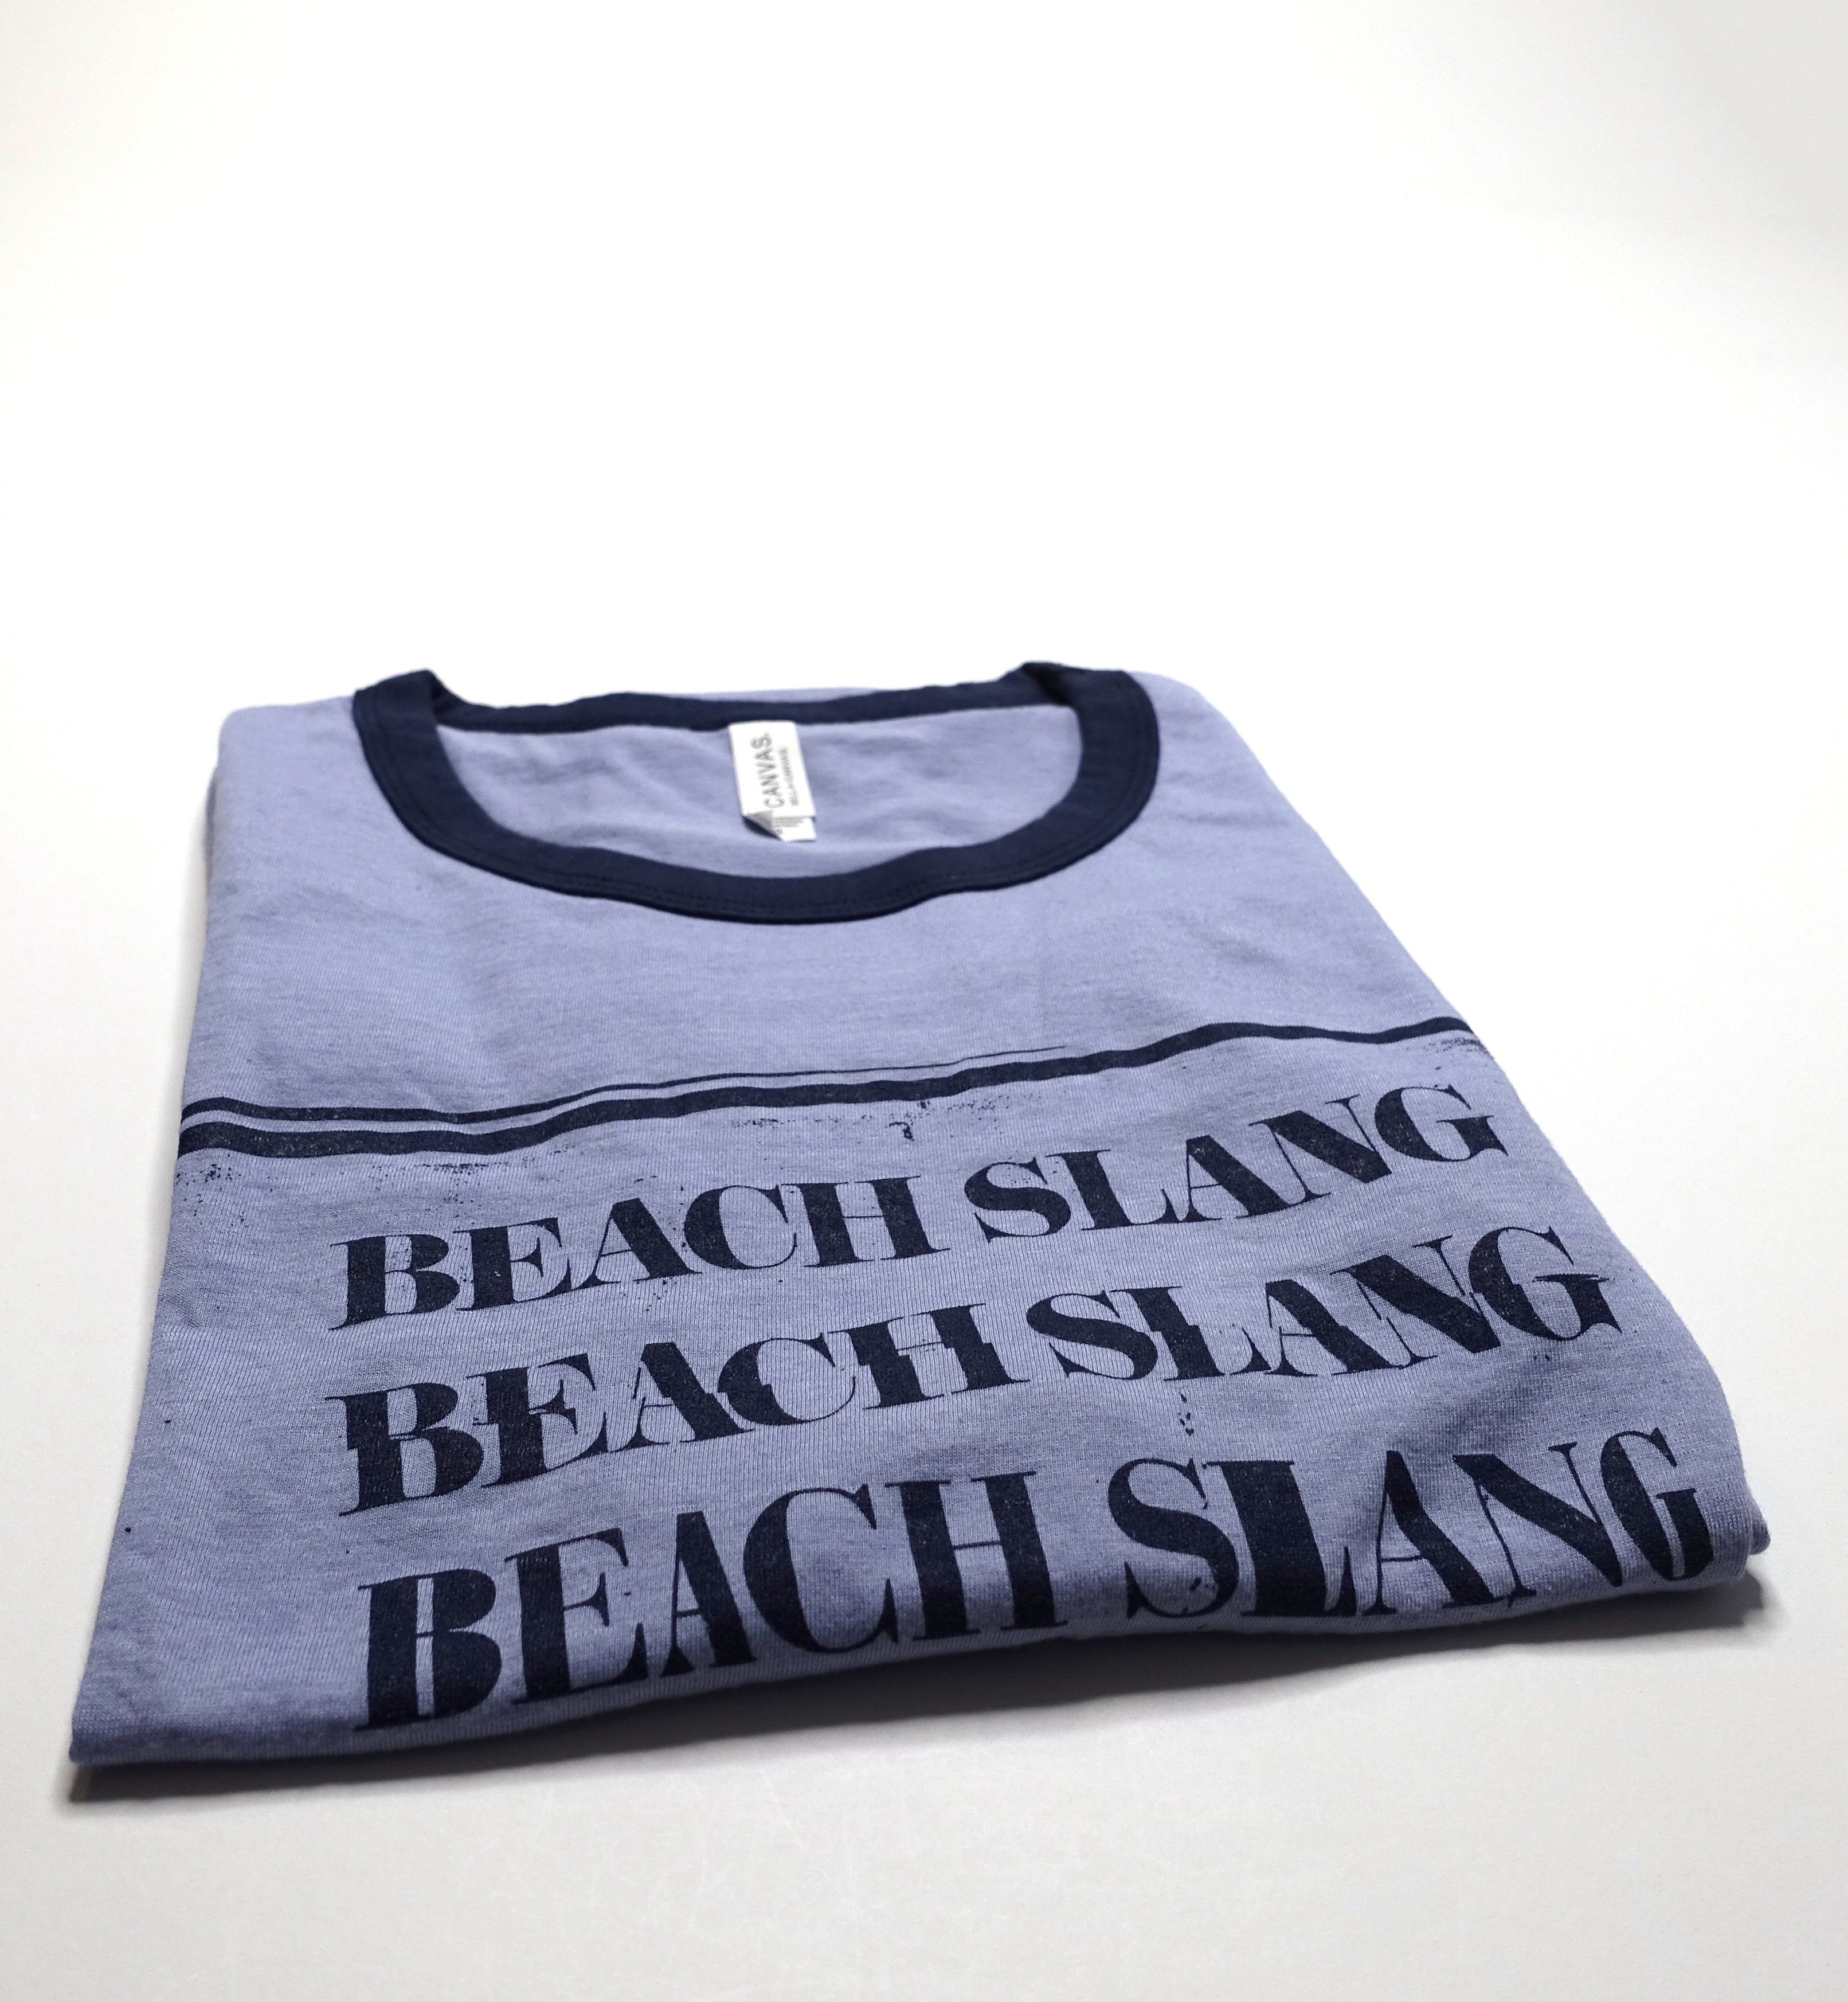 Beach Slang - A Loud Bash Of Teenage Feelings Pre-Order Shirt Size XL